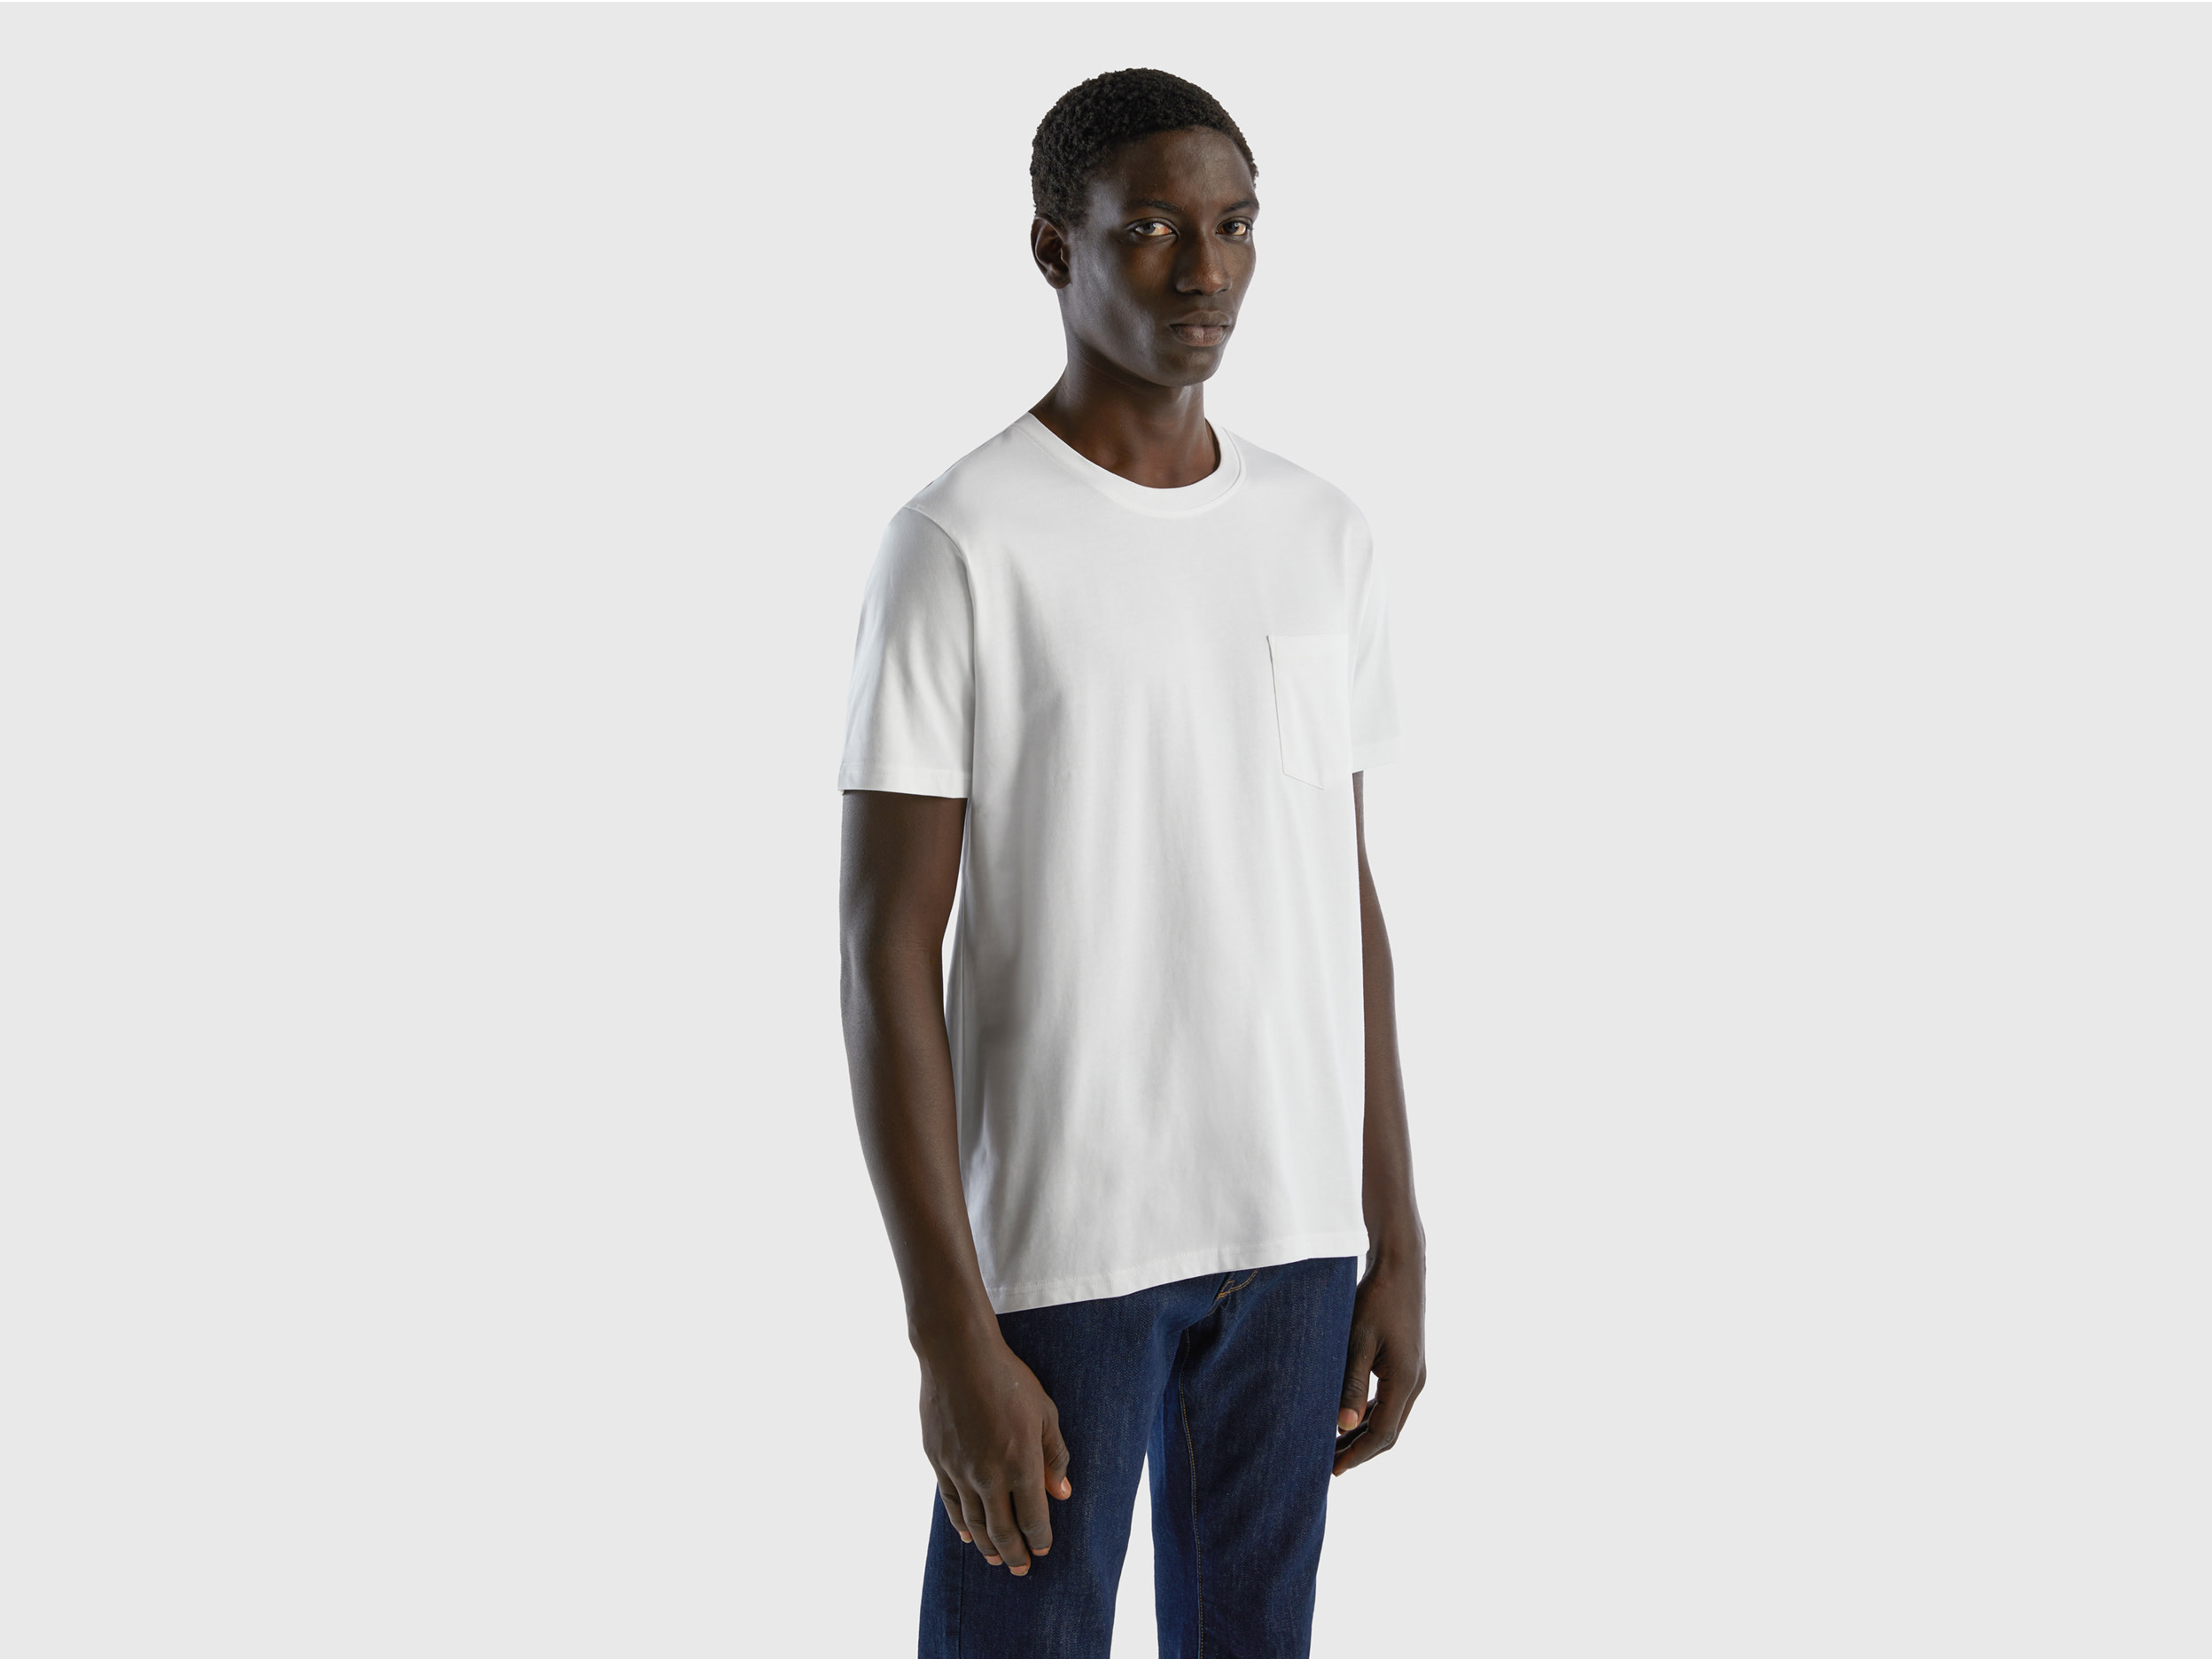 Benetton, 100% Cotton T-shirt With Pocket, size XXL, White, Men